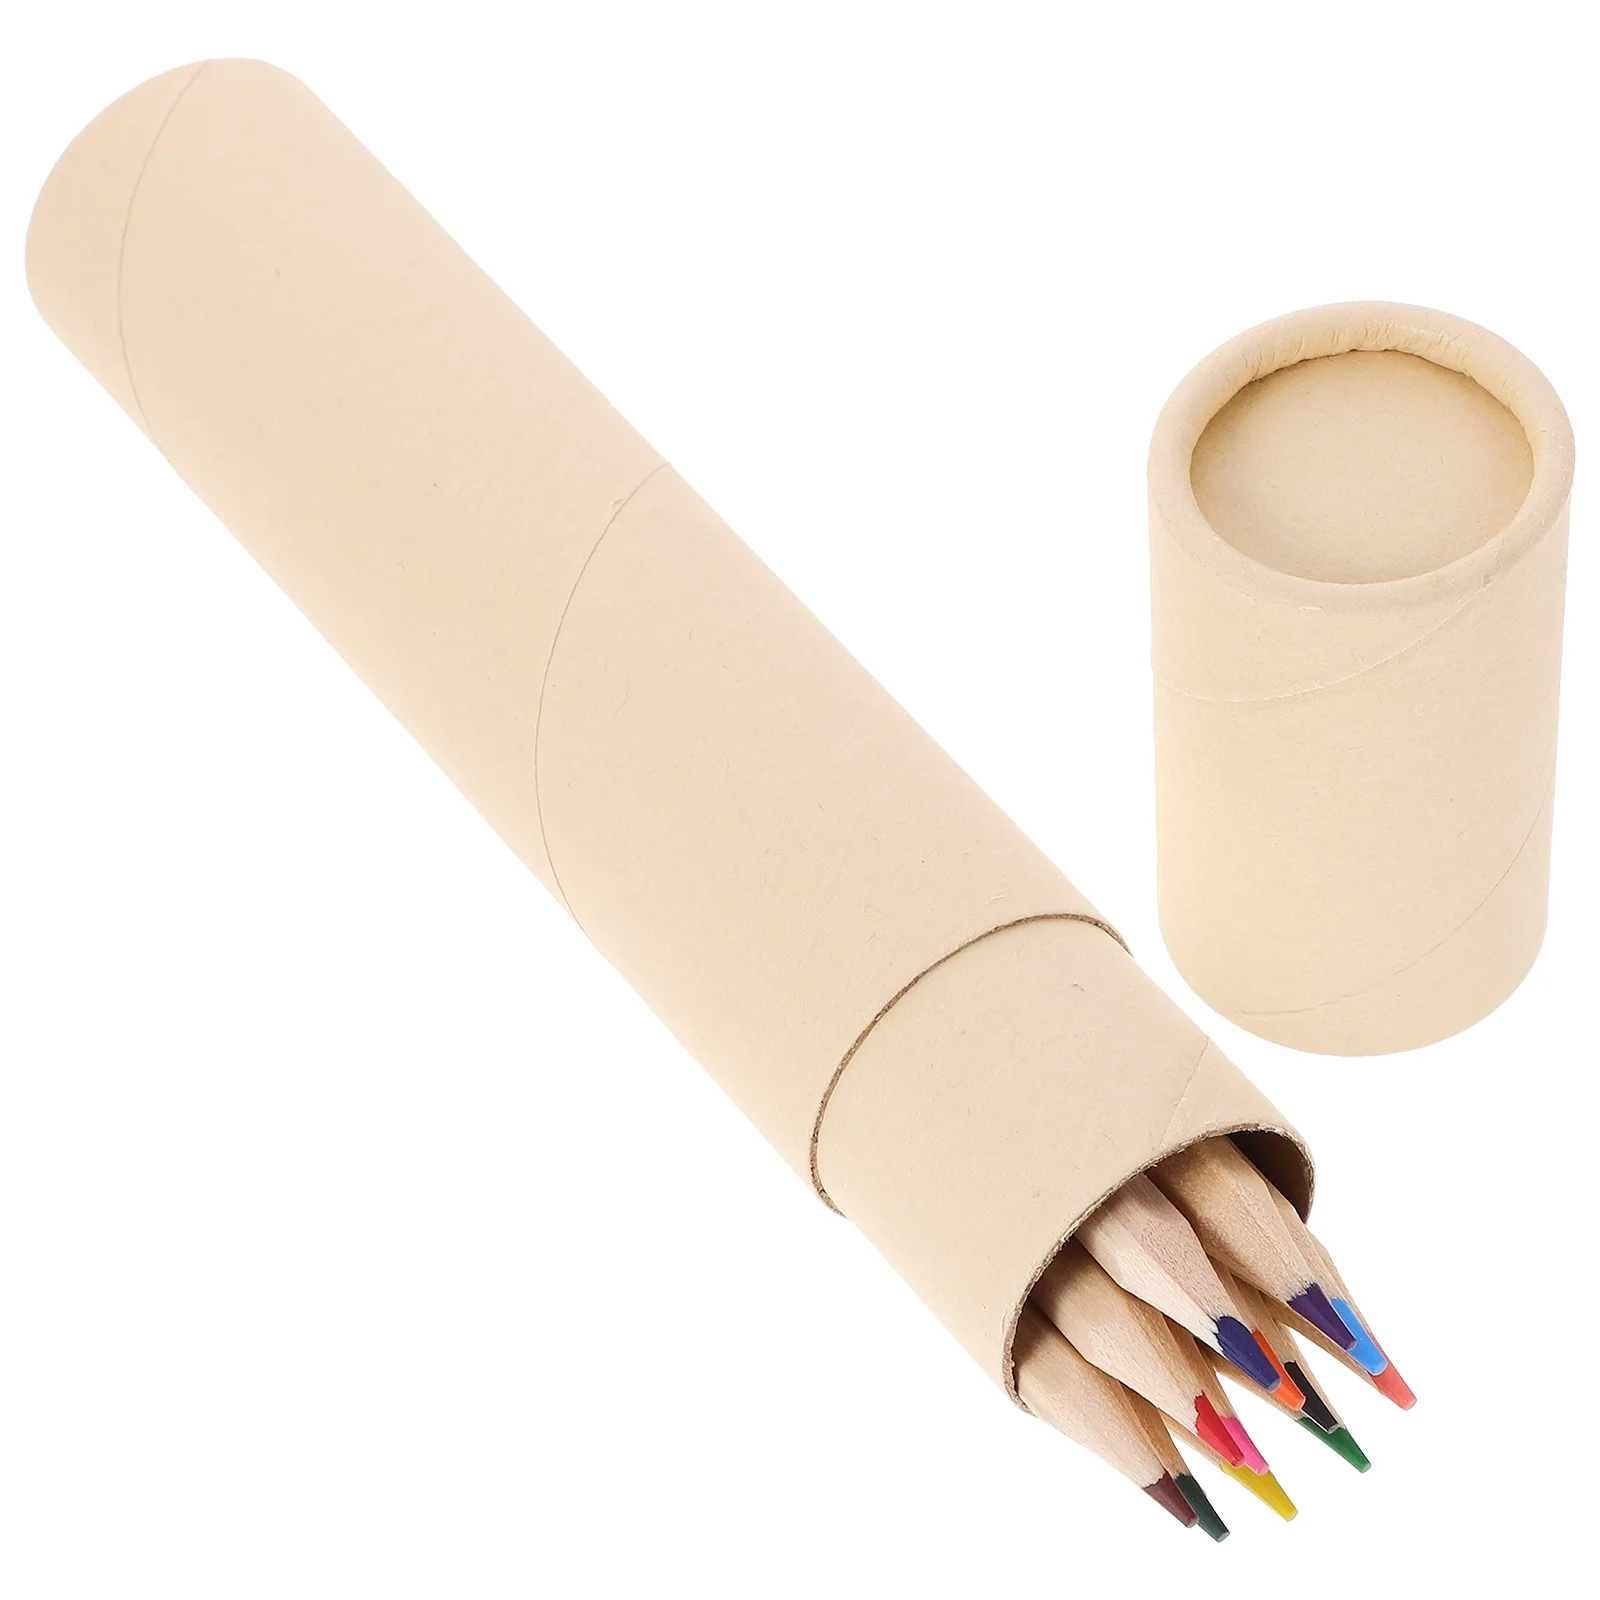 

1 коробка декоративных цветных карандашей для рисования для художников, портативные разноцветные карандаши (12 шт.)